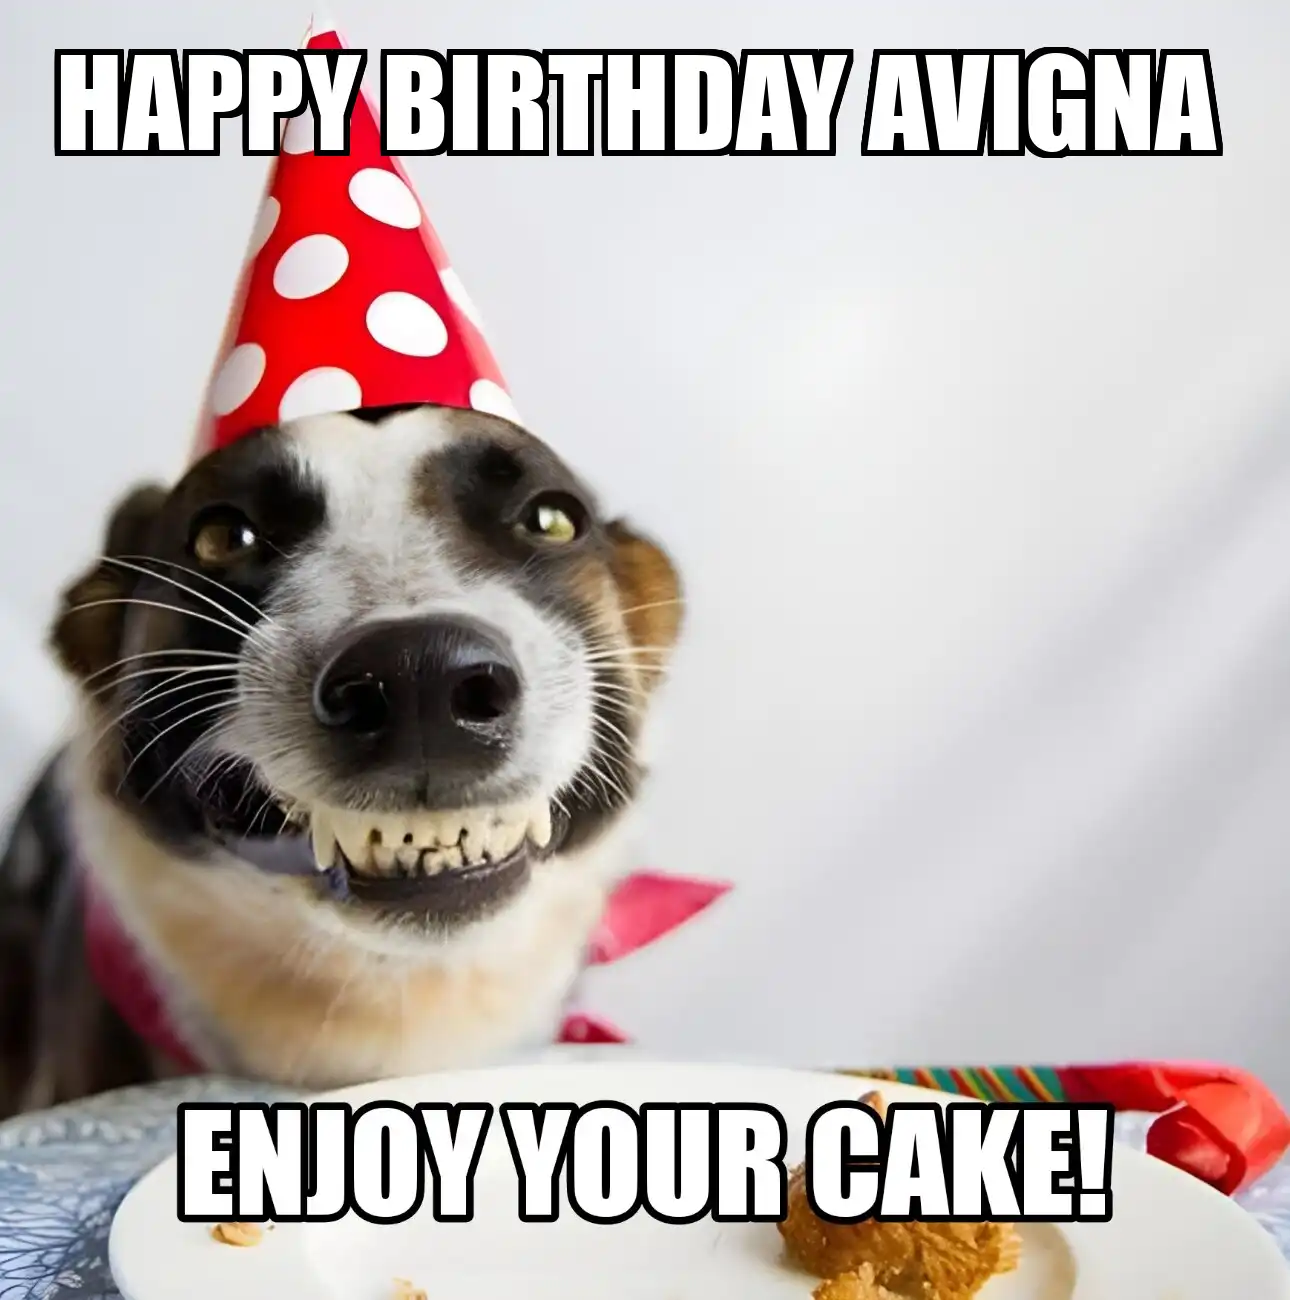 Happy Birthday Avigna Enjoy Your Cake Dog Meme